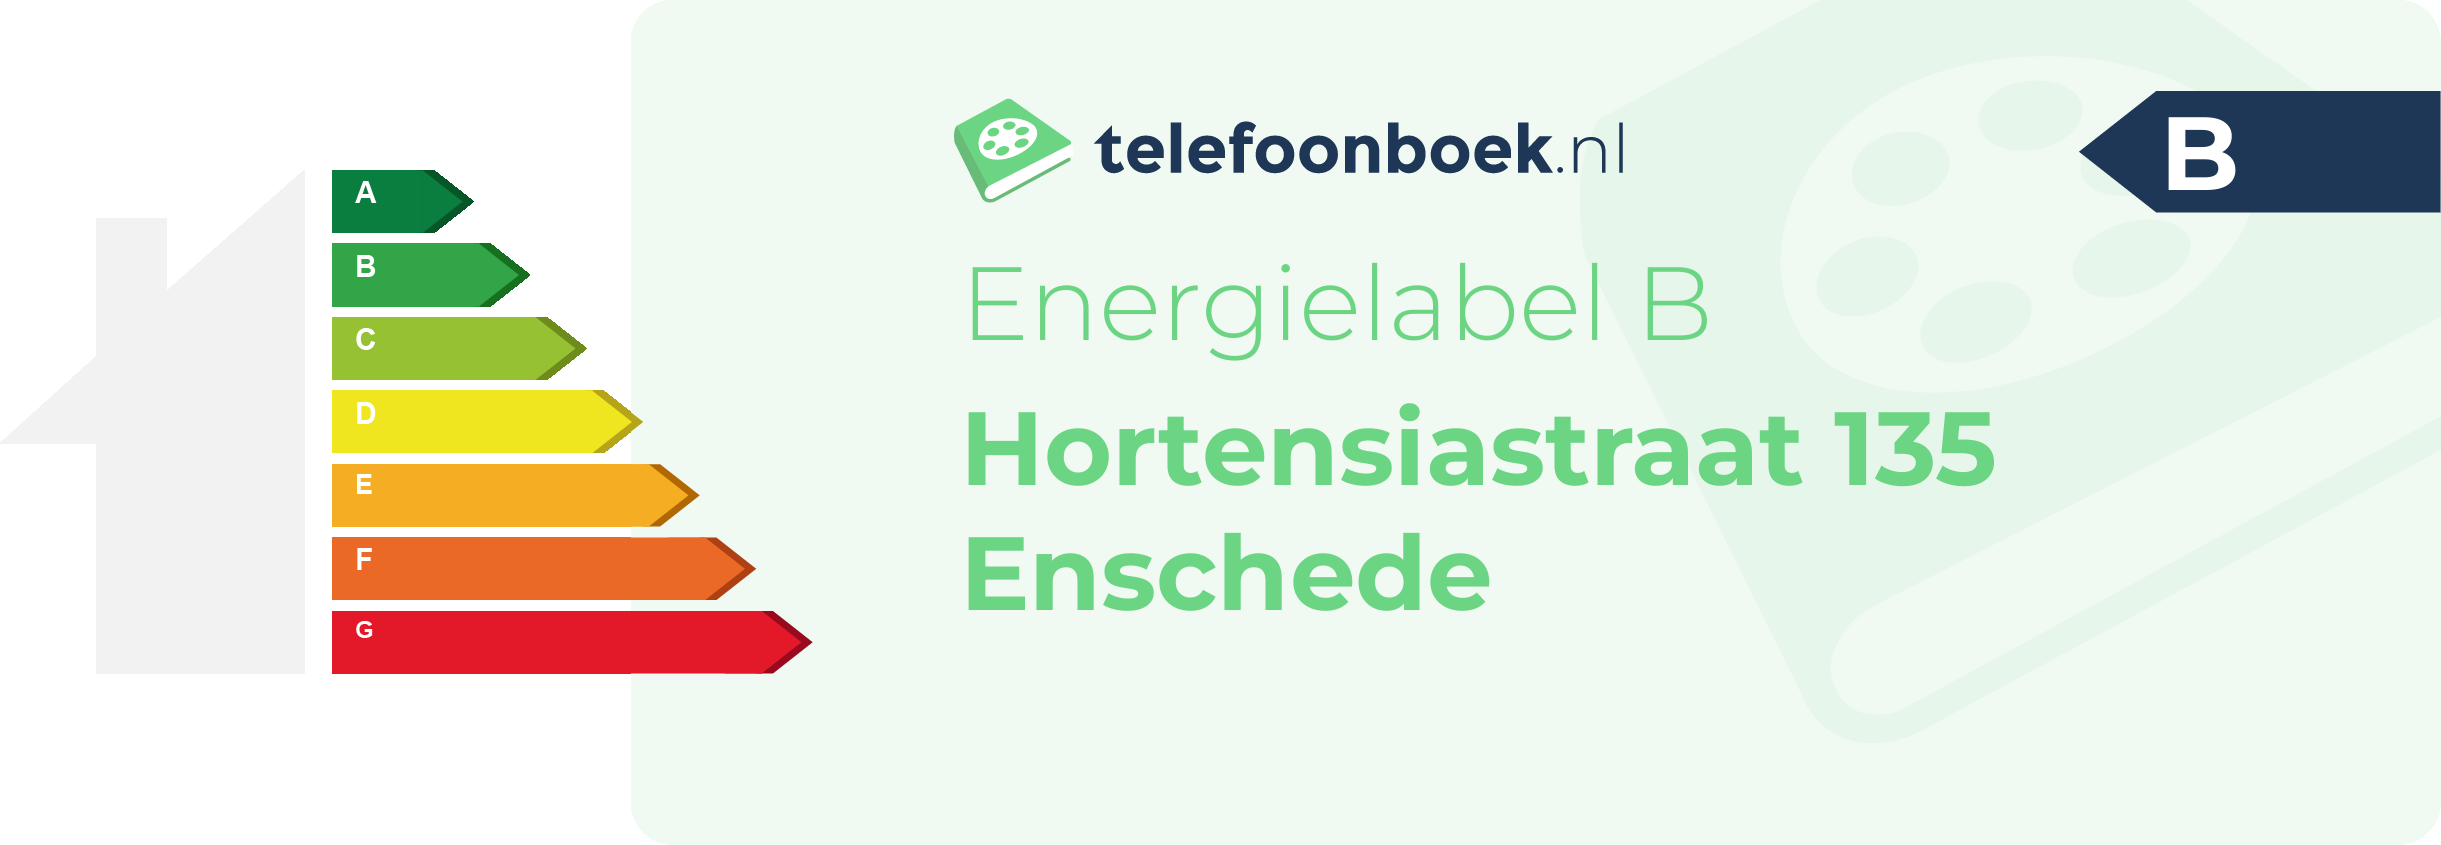 Energielabel Hortensiastraat 135 Enschede